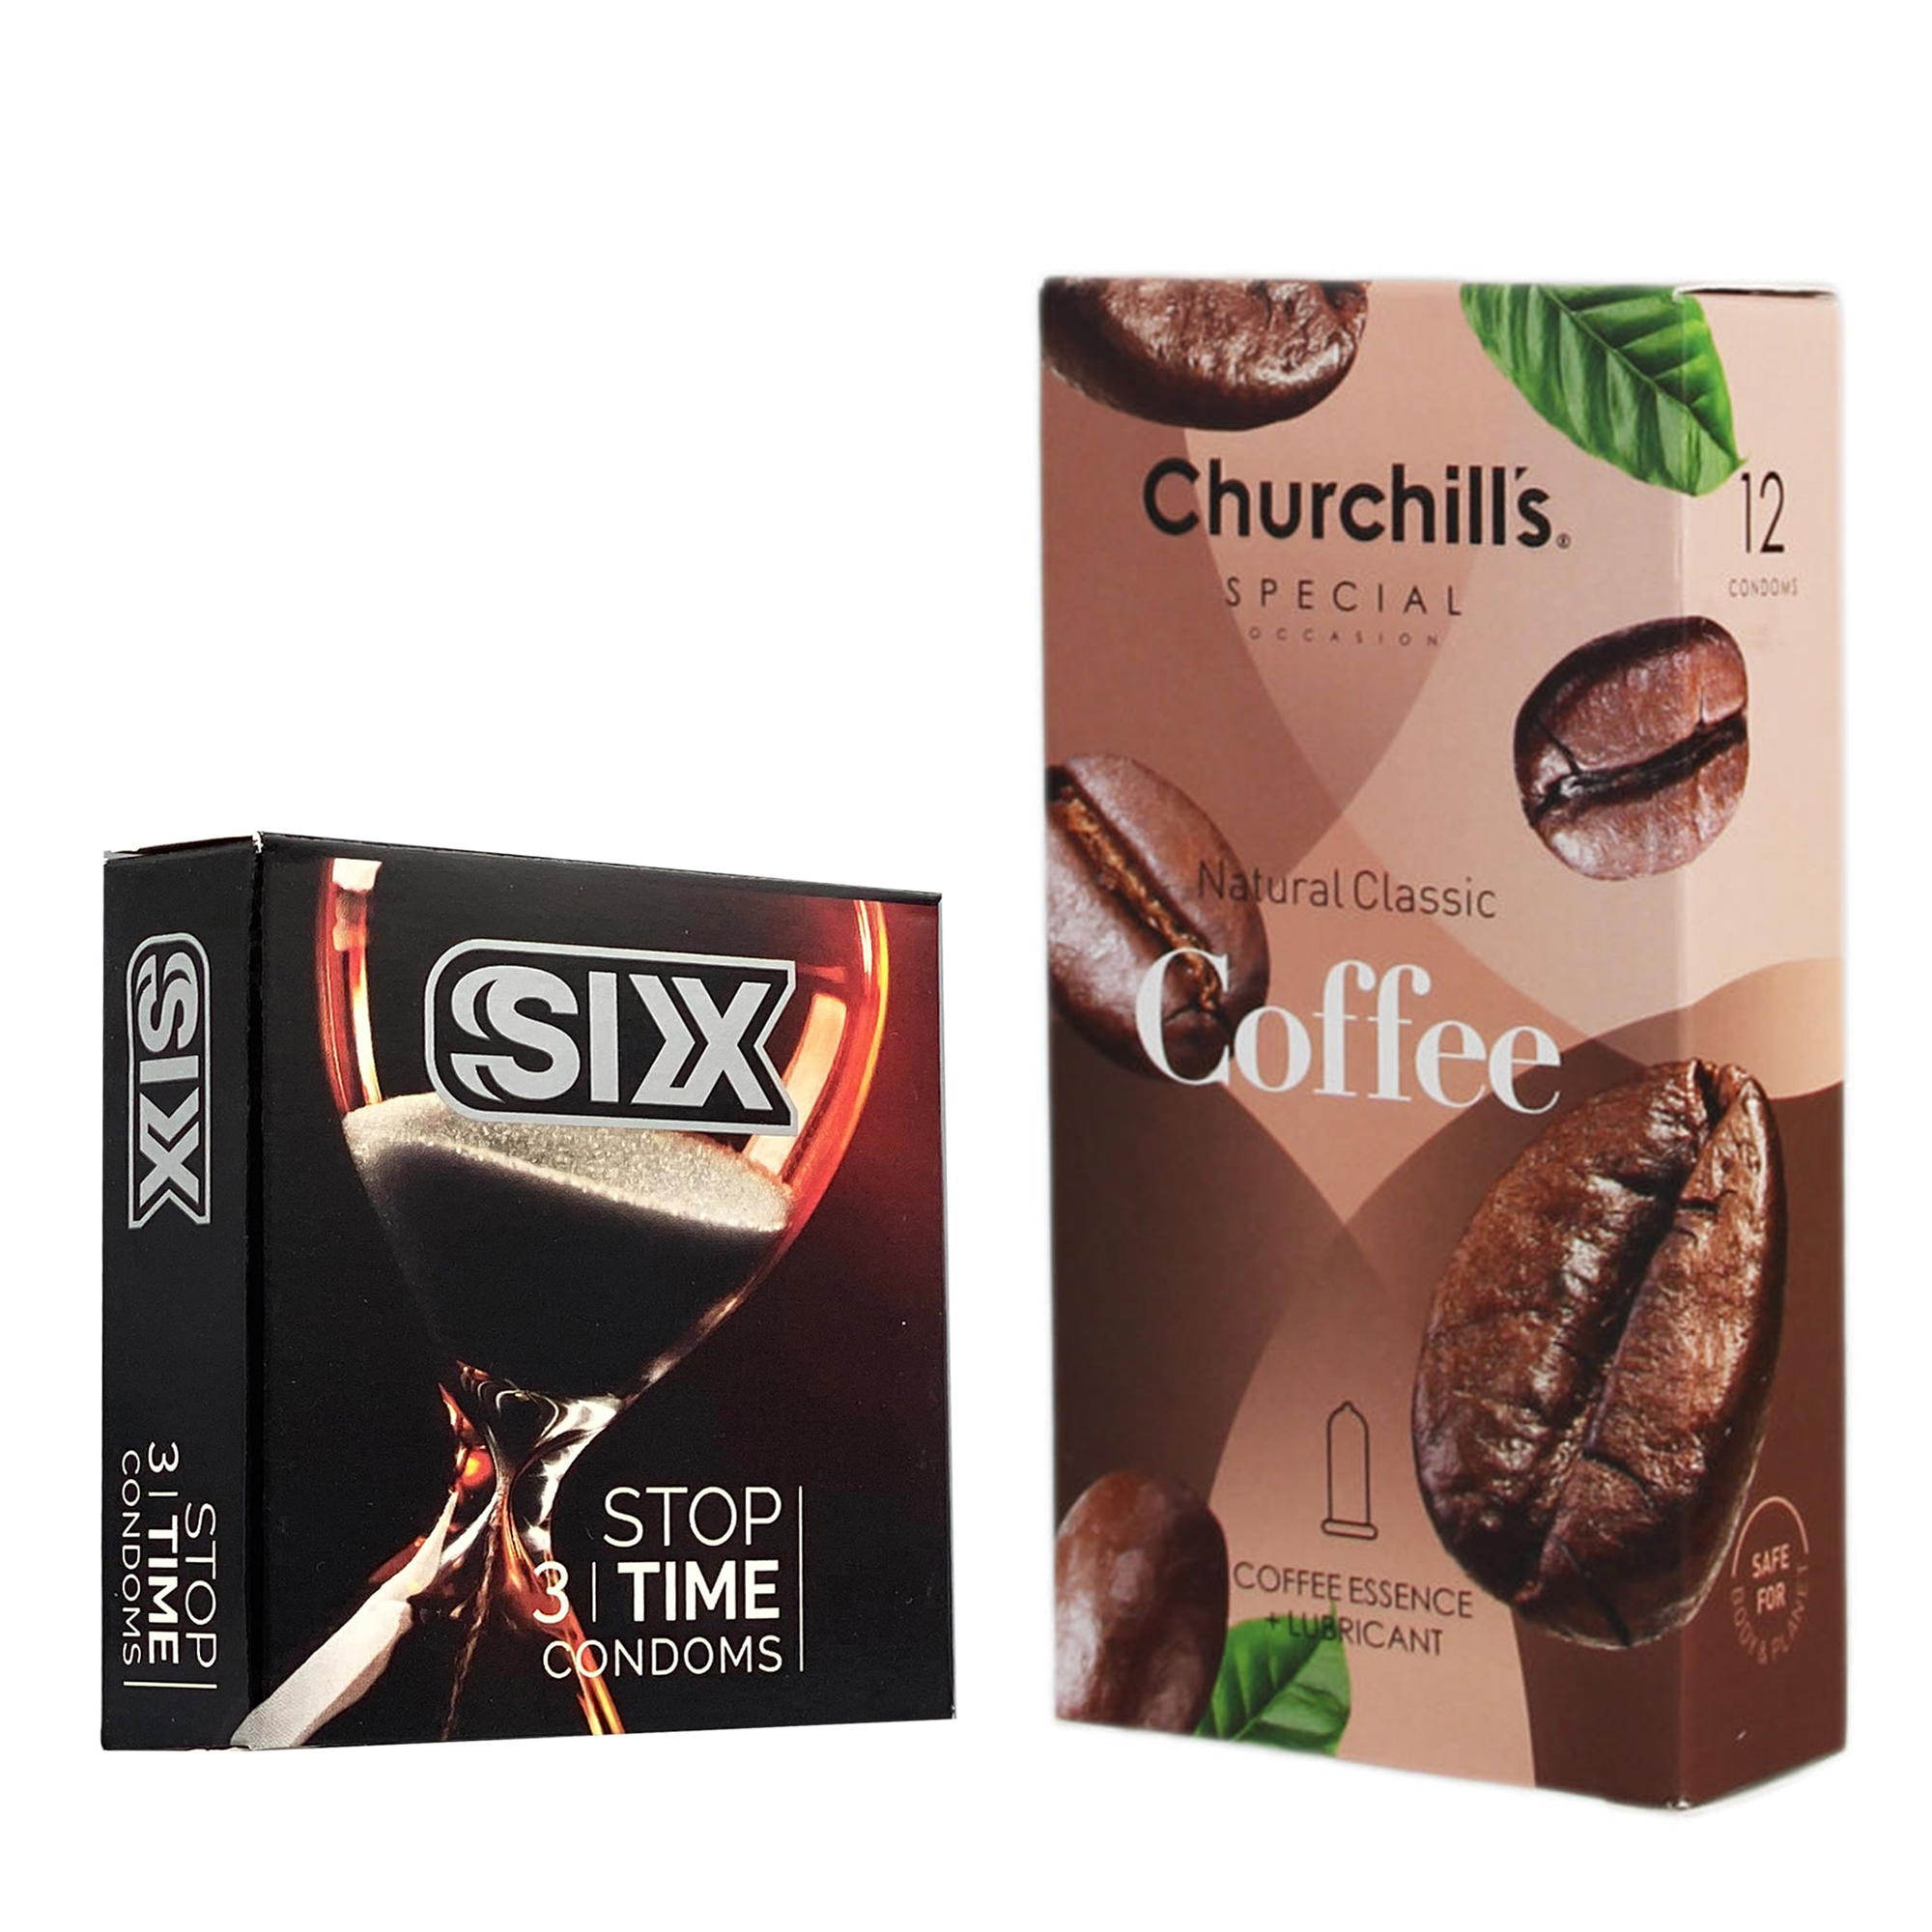 کاندوم چرچیلز مدل Coffee بسته 12 عددی به همراه کاندوم سیکس مدل کلاسیک تاخیری بسته 3 عددی 